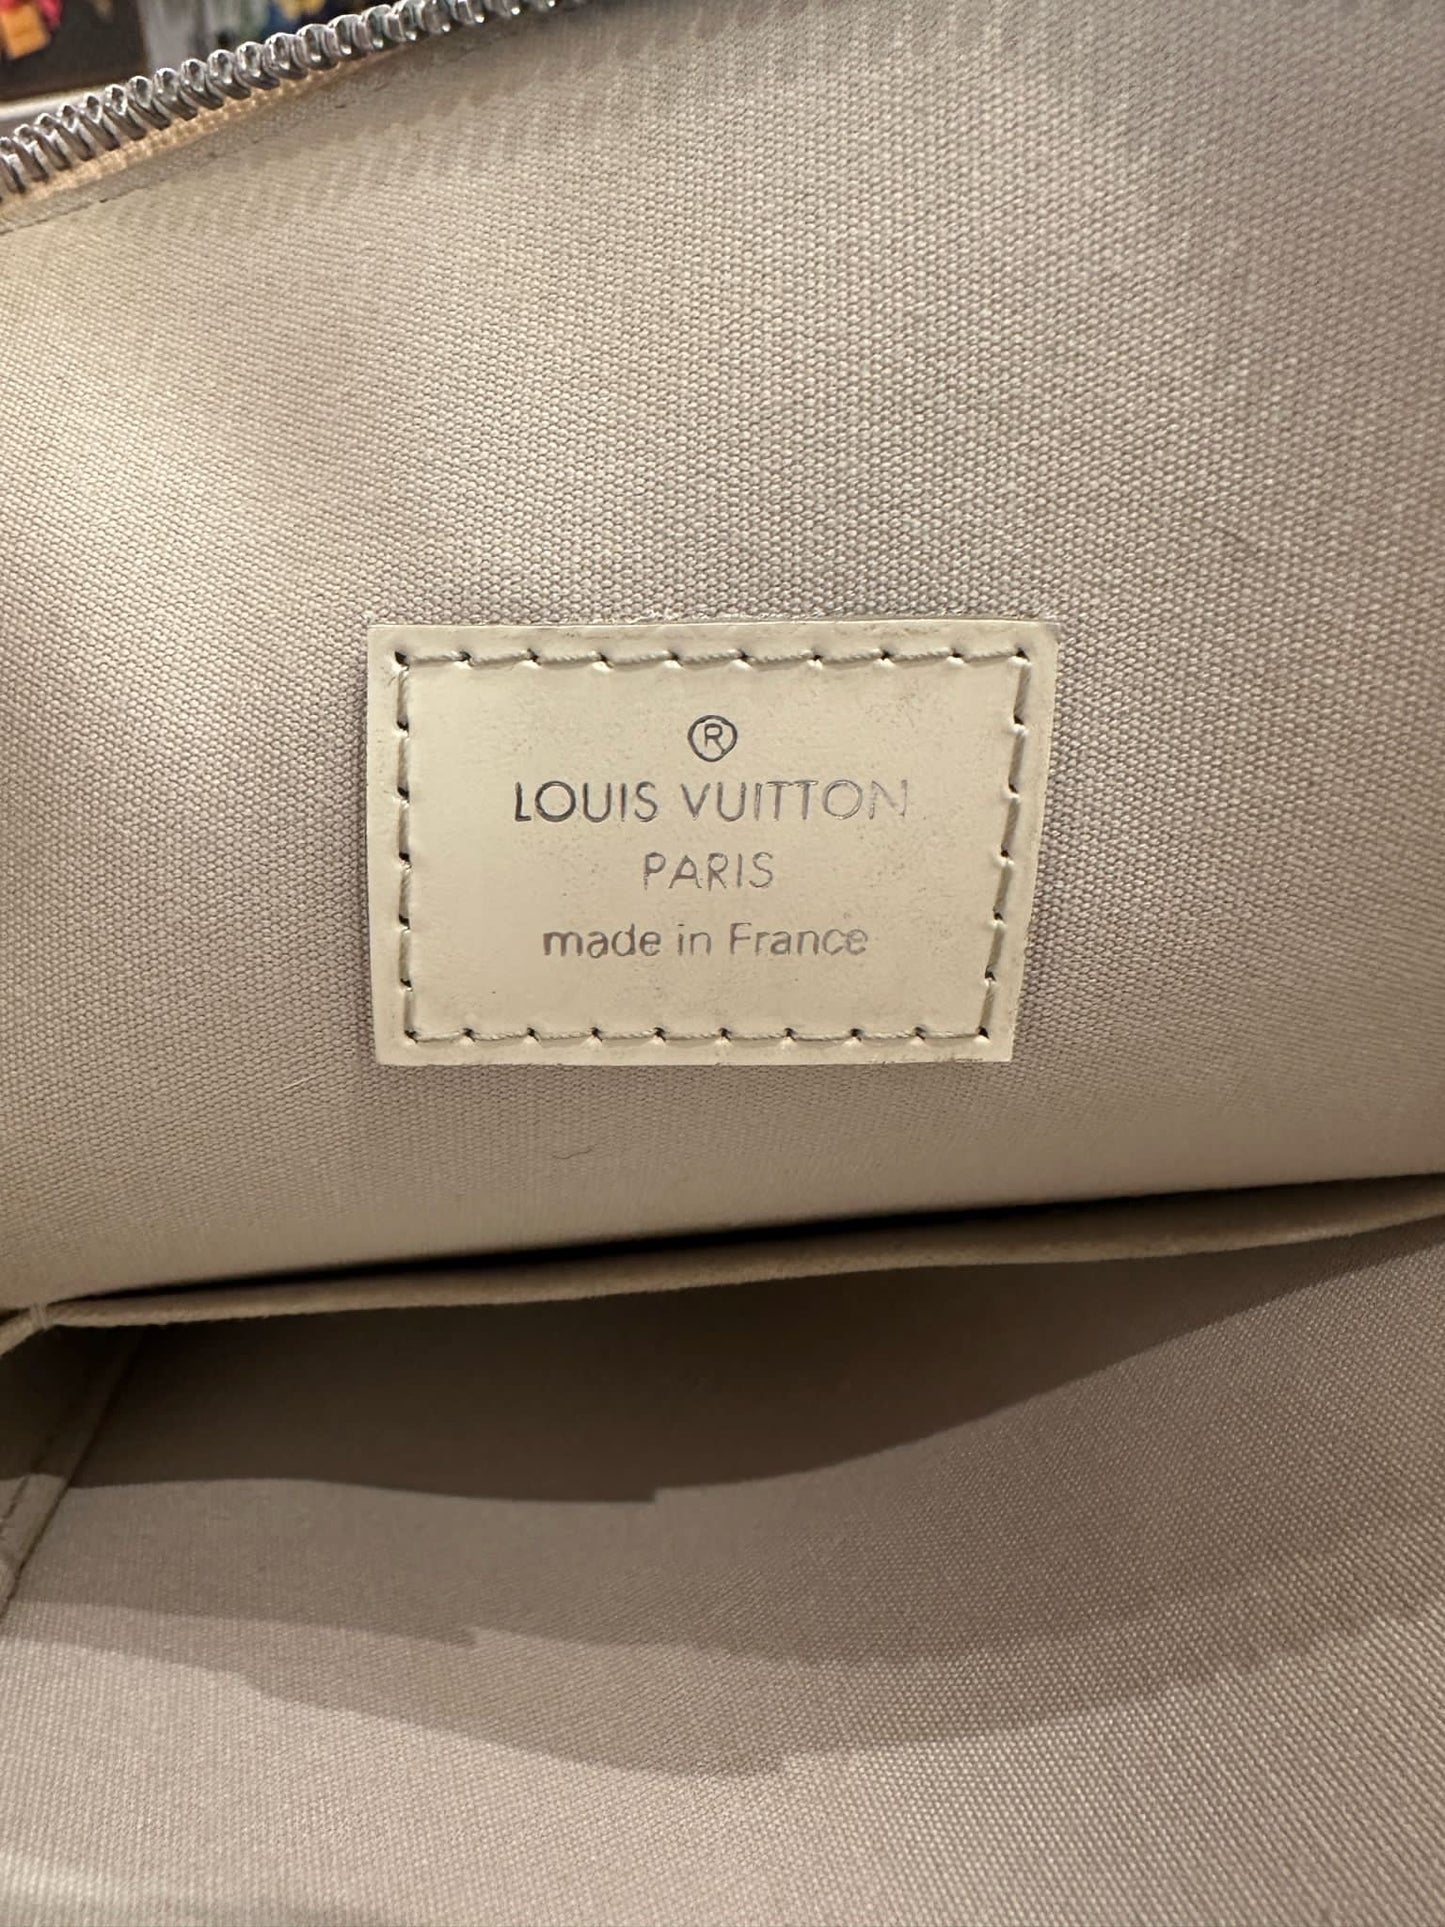 Louis Vuitton Lockit Epi leather